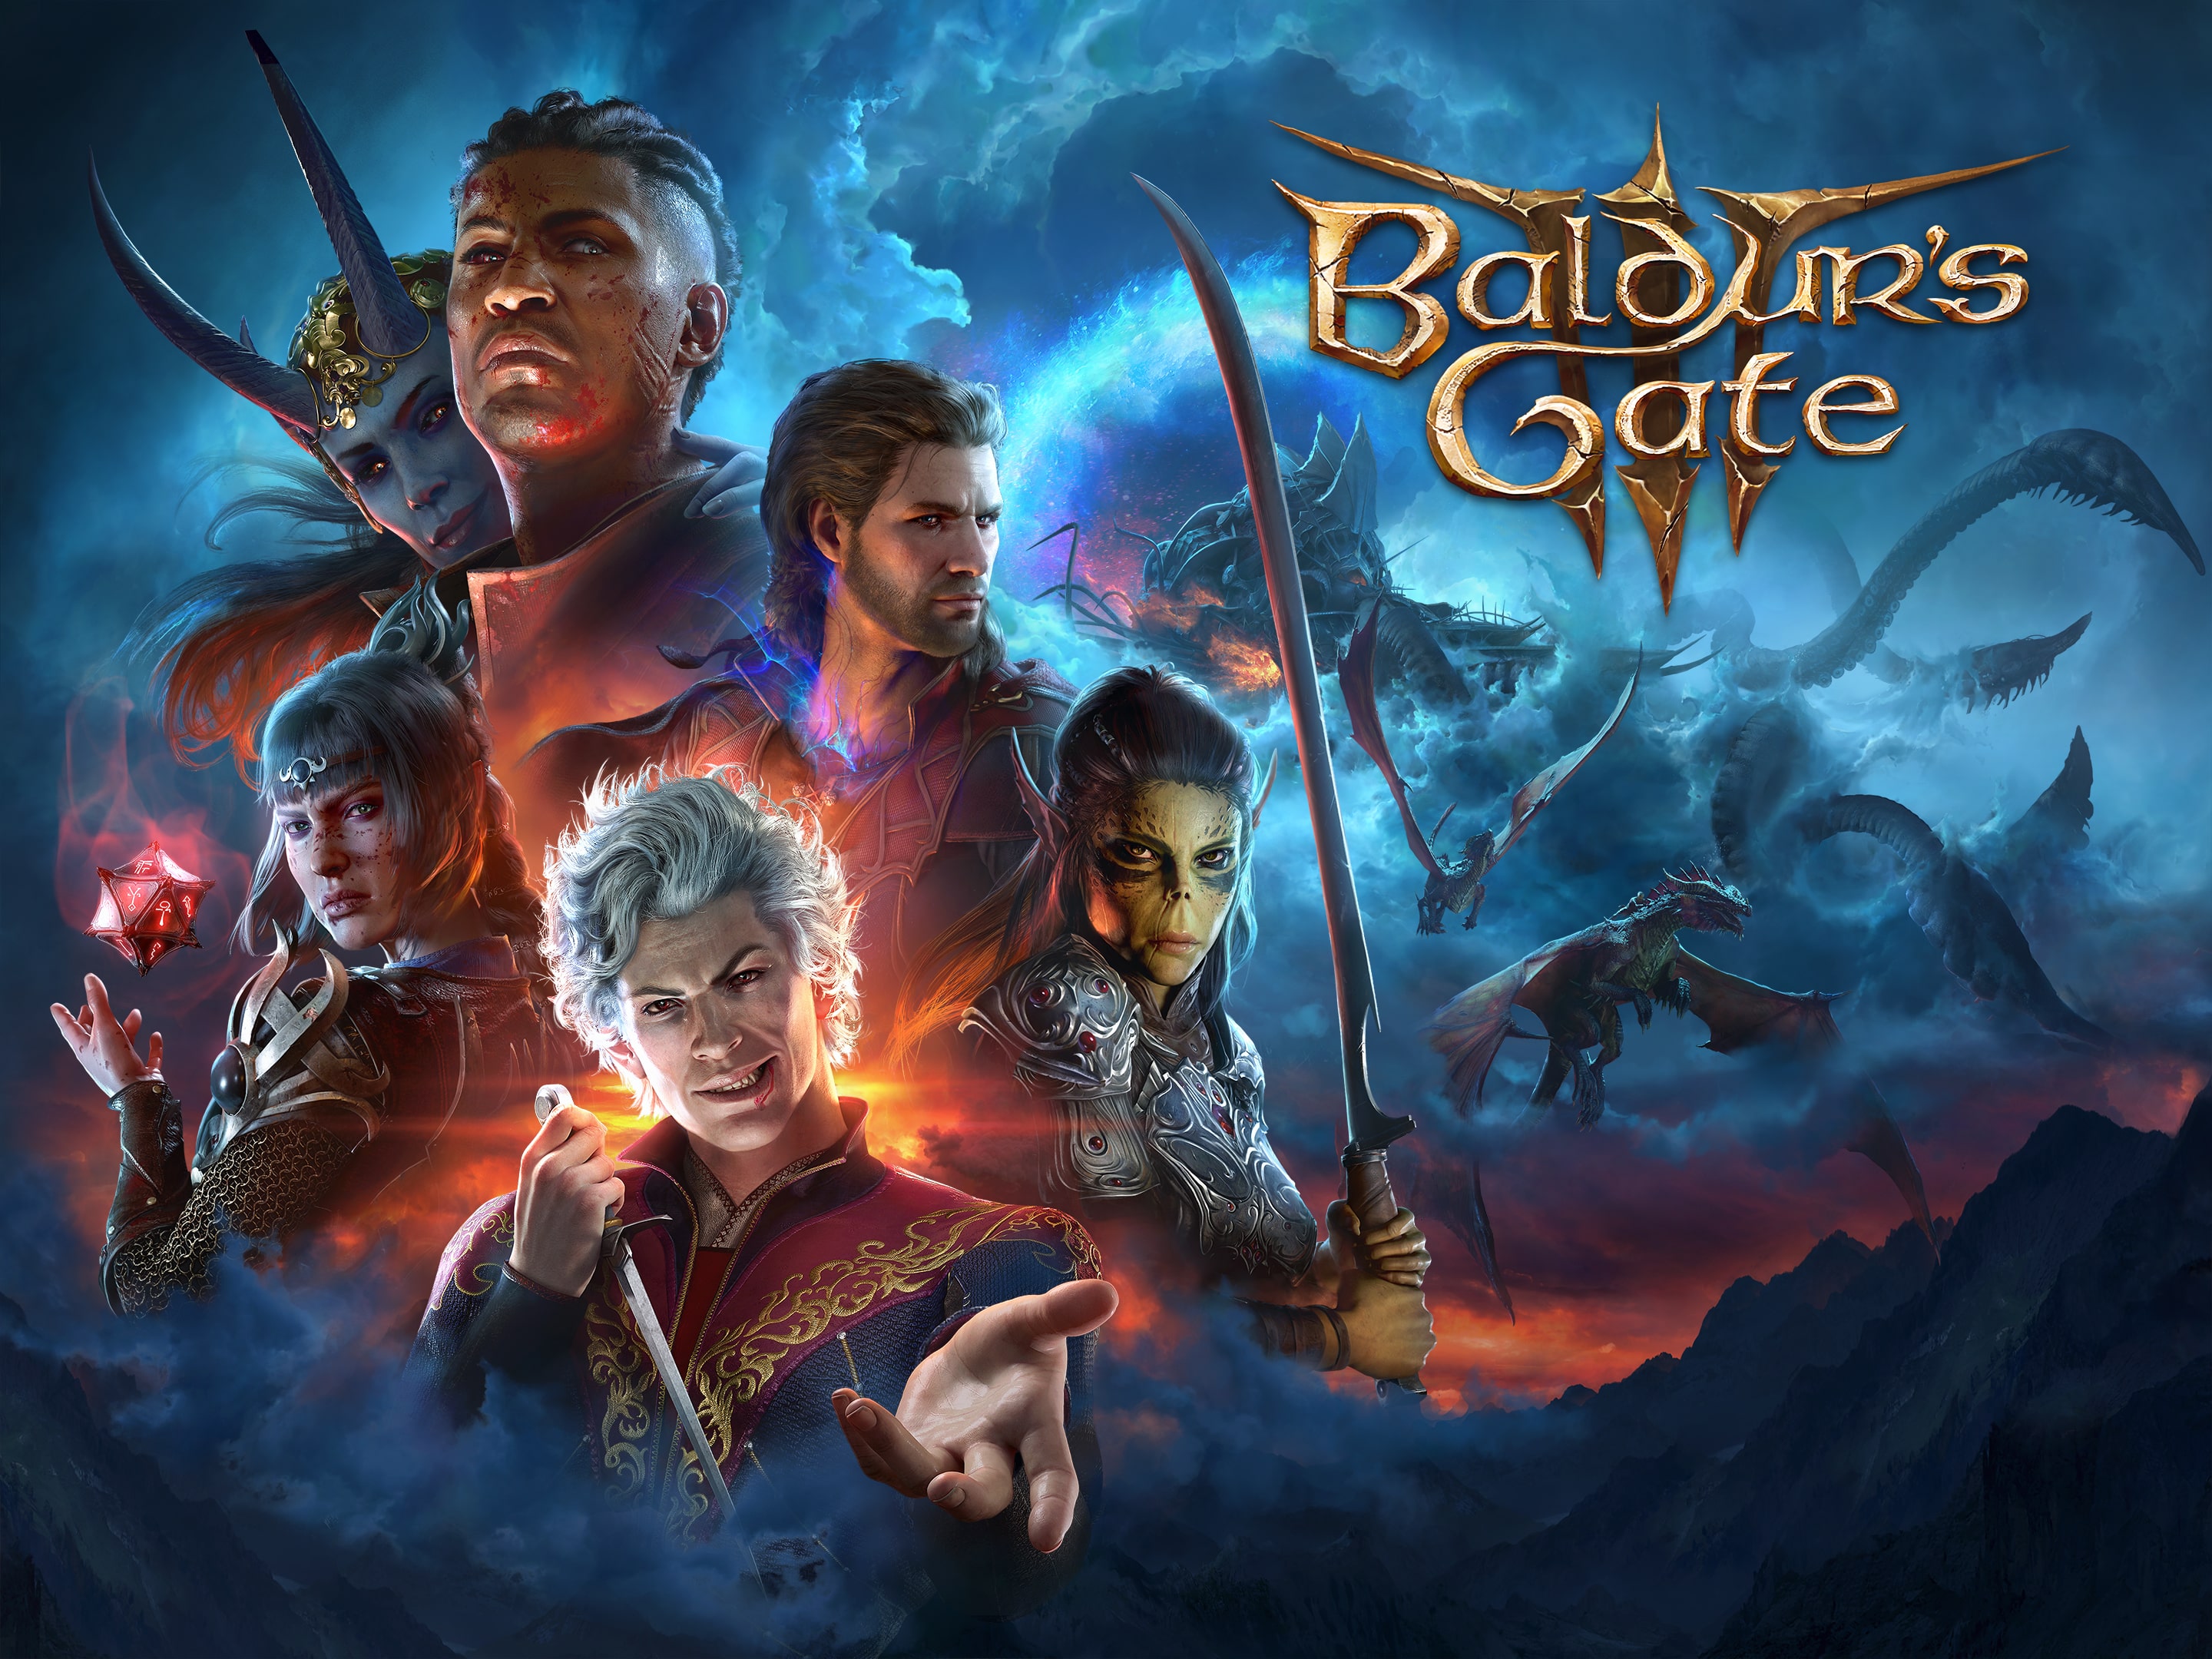 Baldur's Gate 3 – PS5 Games